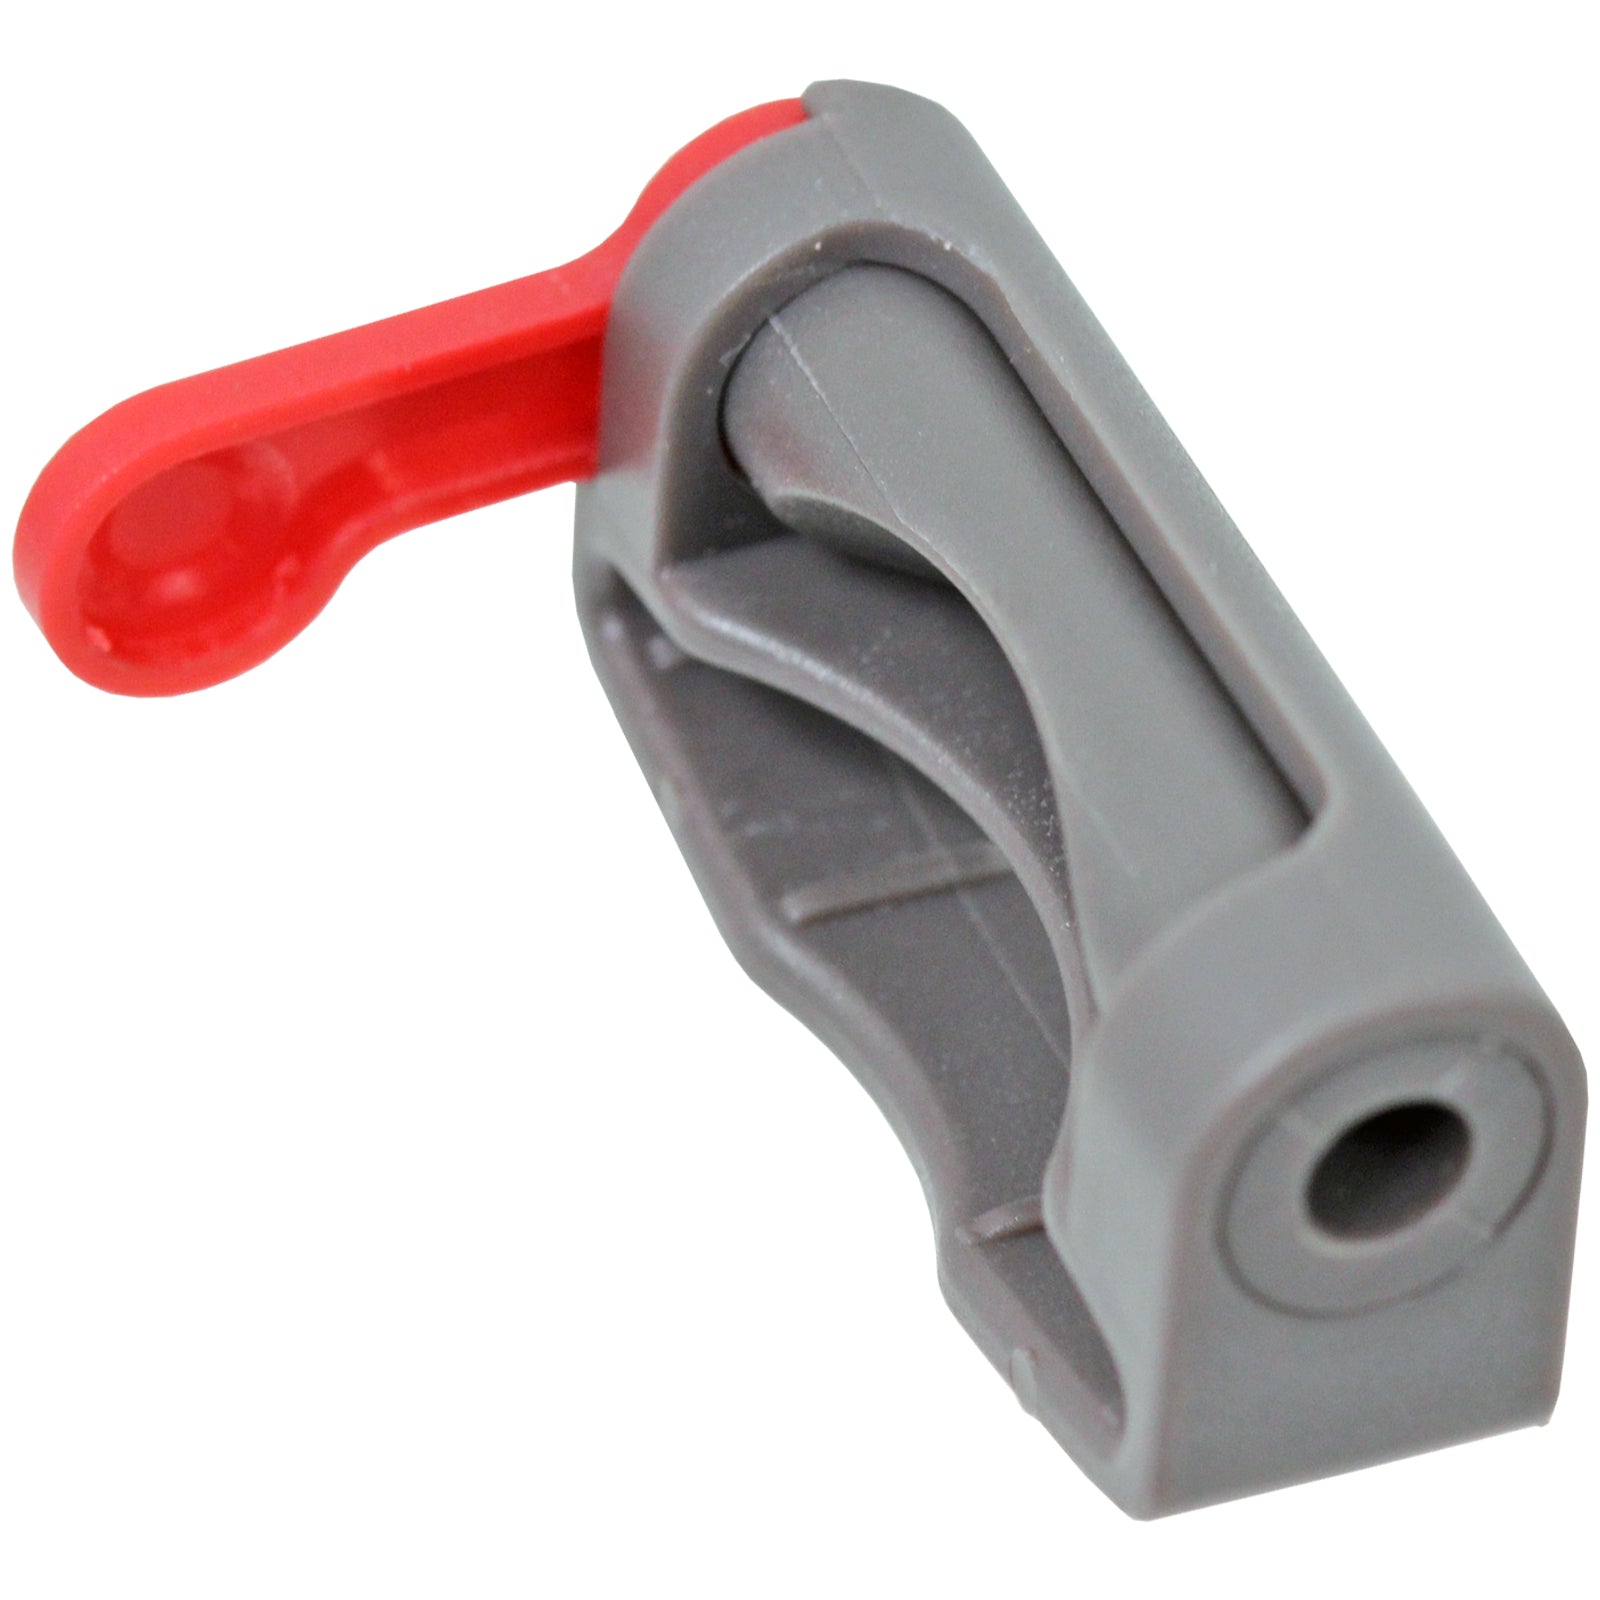 Trigger Lock for DYSON V11 SV14 Vacuum Cleaner Cordless Power Holder Button